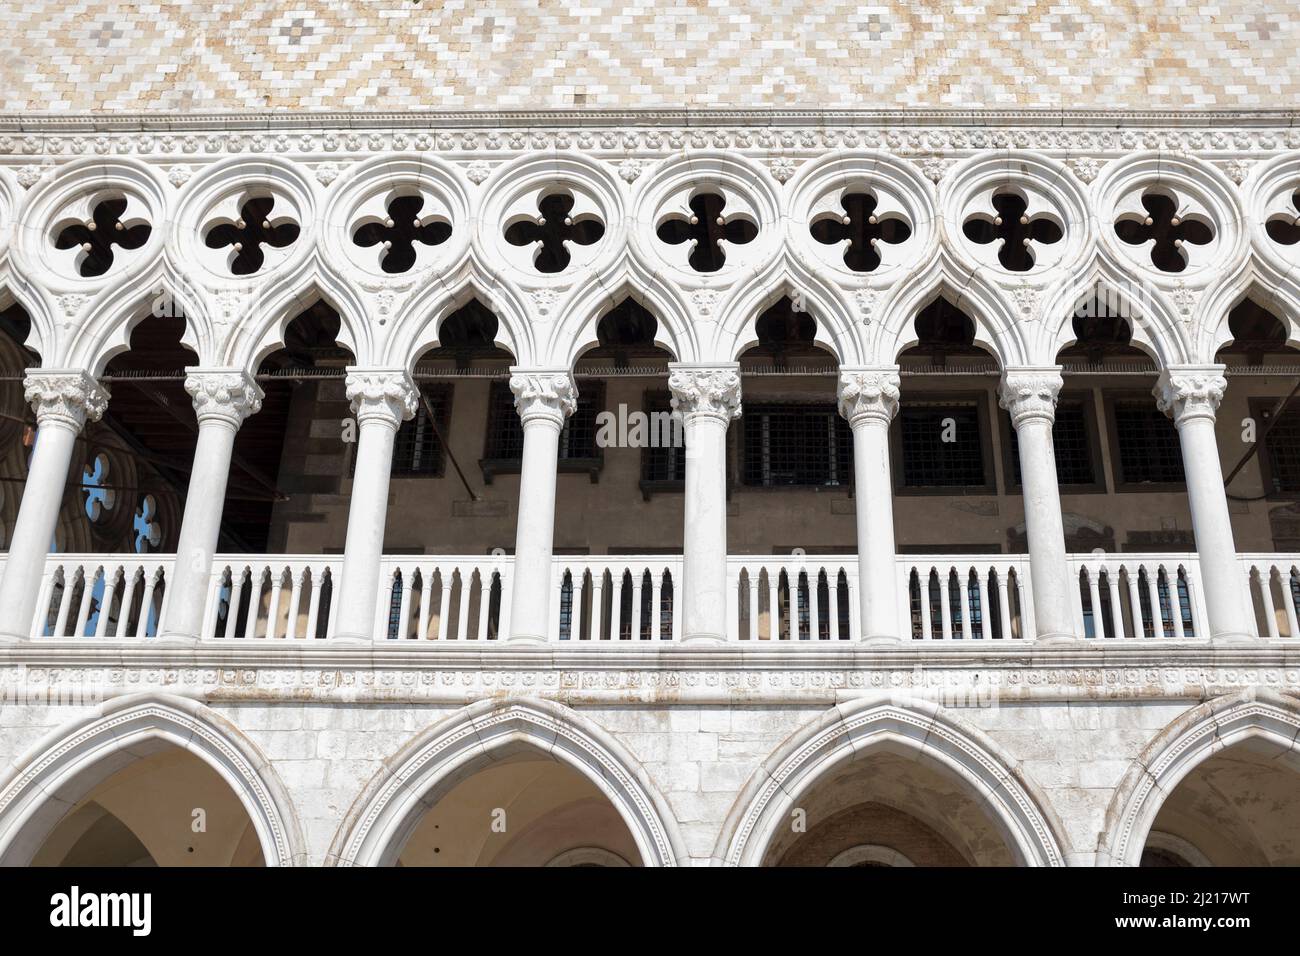 Fachada de piedra ornamentada del Palacio Ducal San Marco Venecia Italia Foto de stock